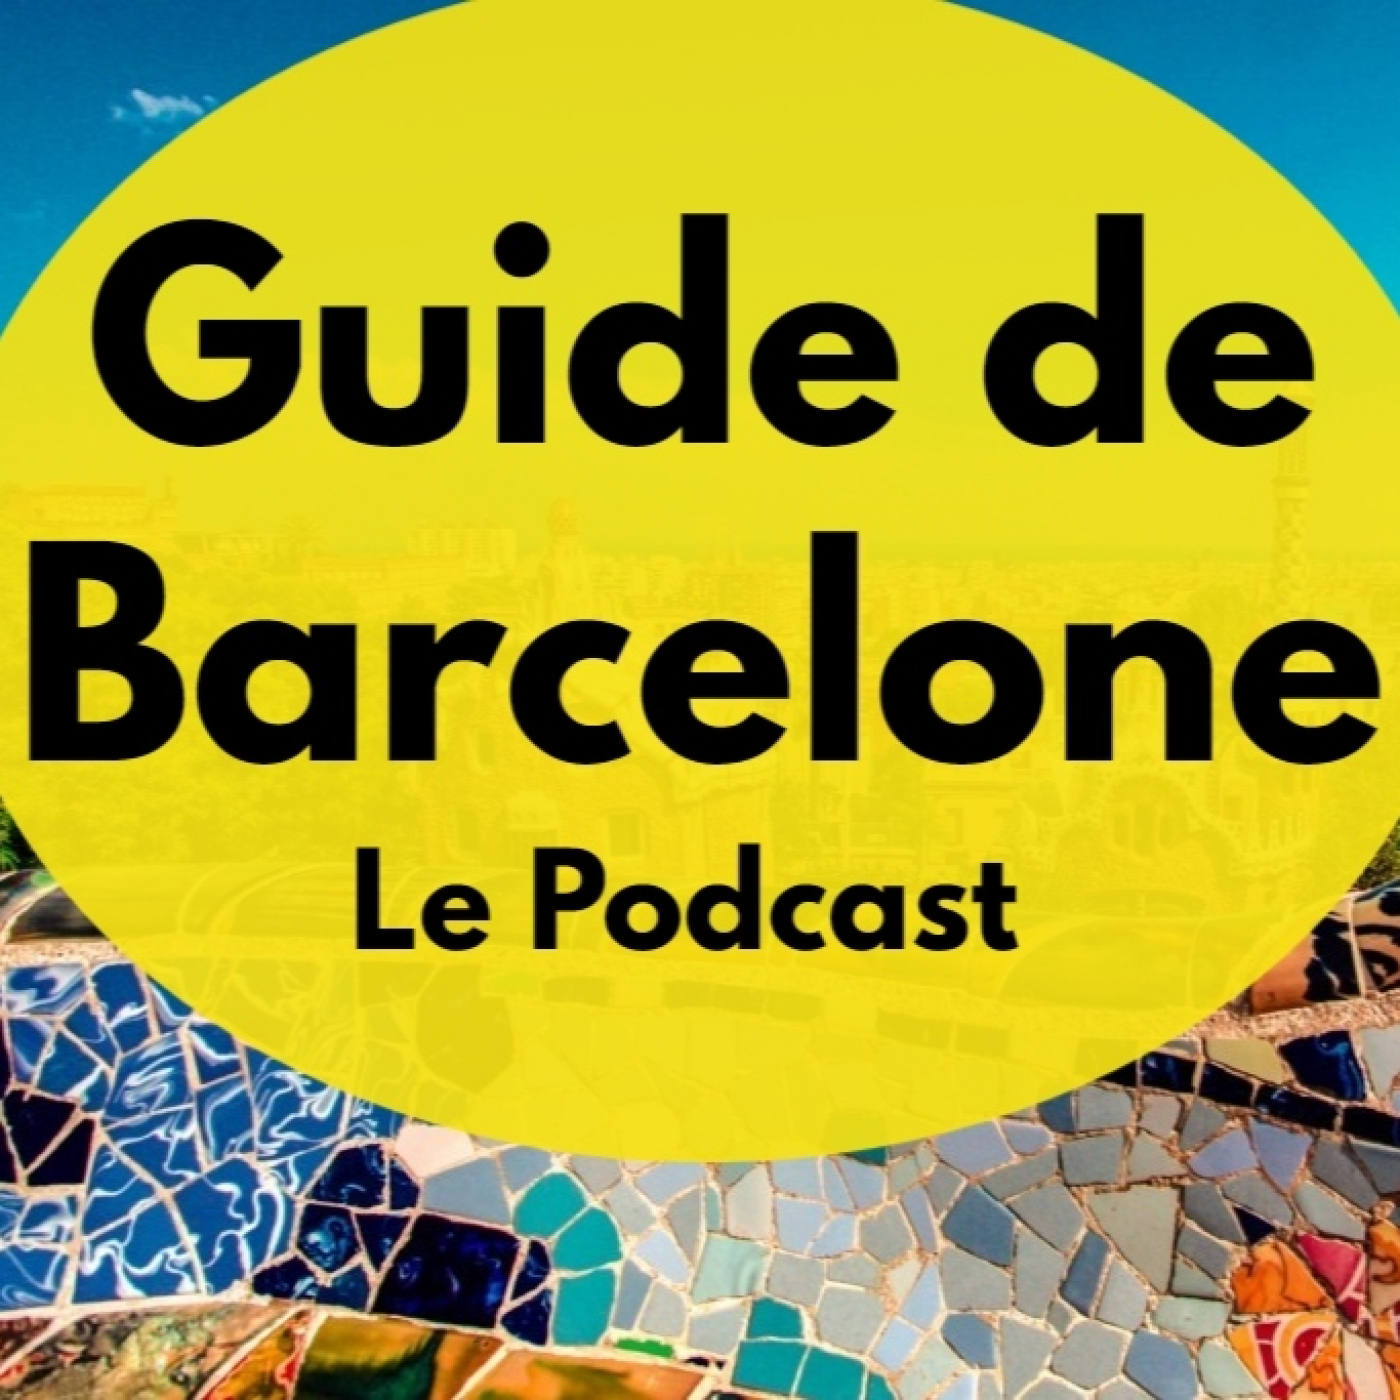 Les 3 meilleurs musées à visiter à Barcelone